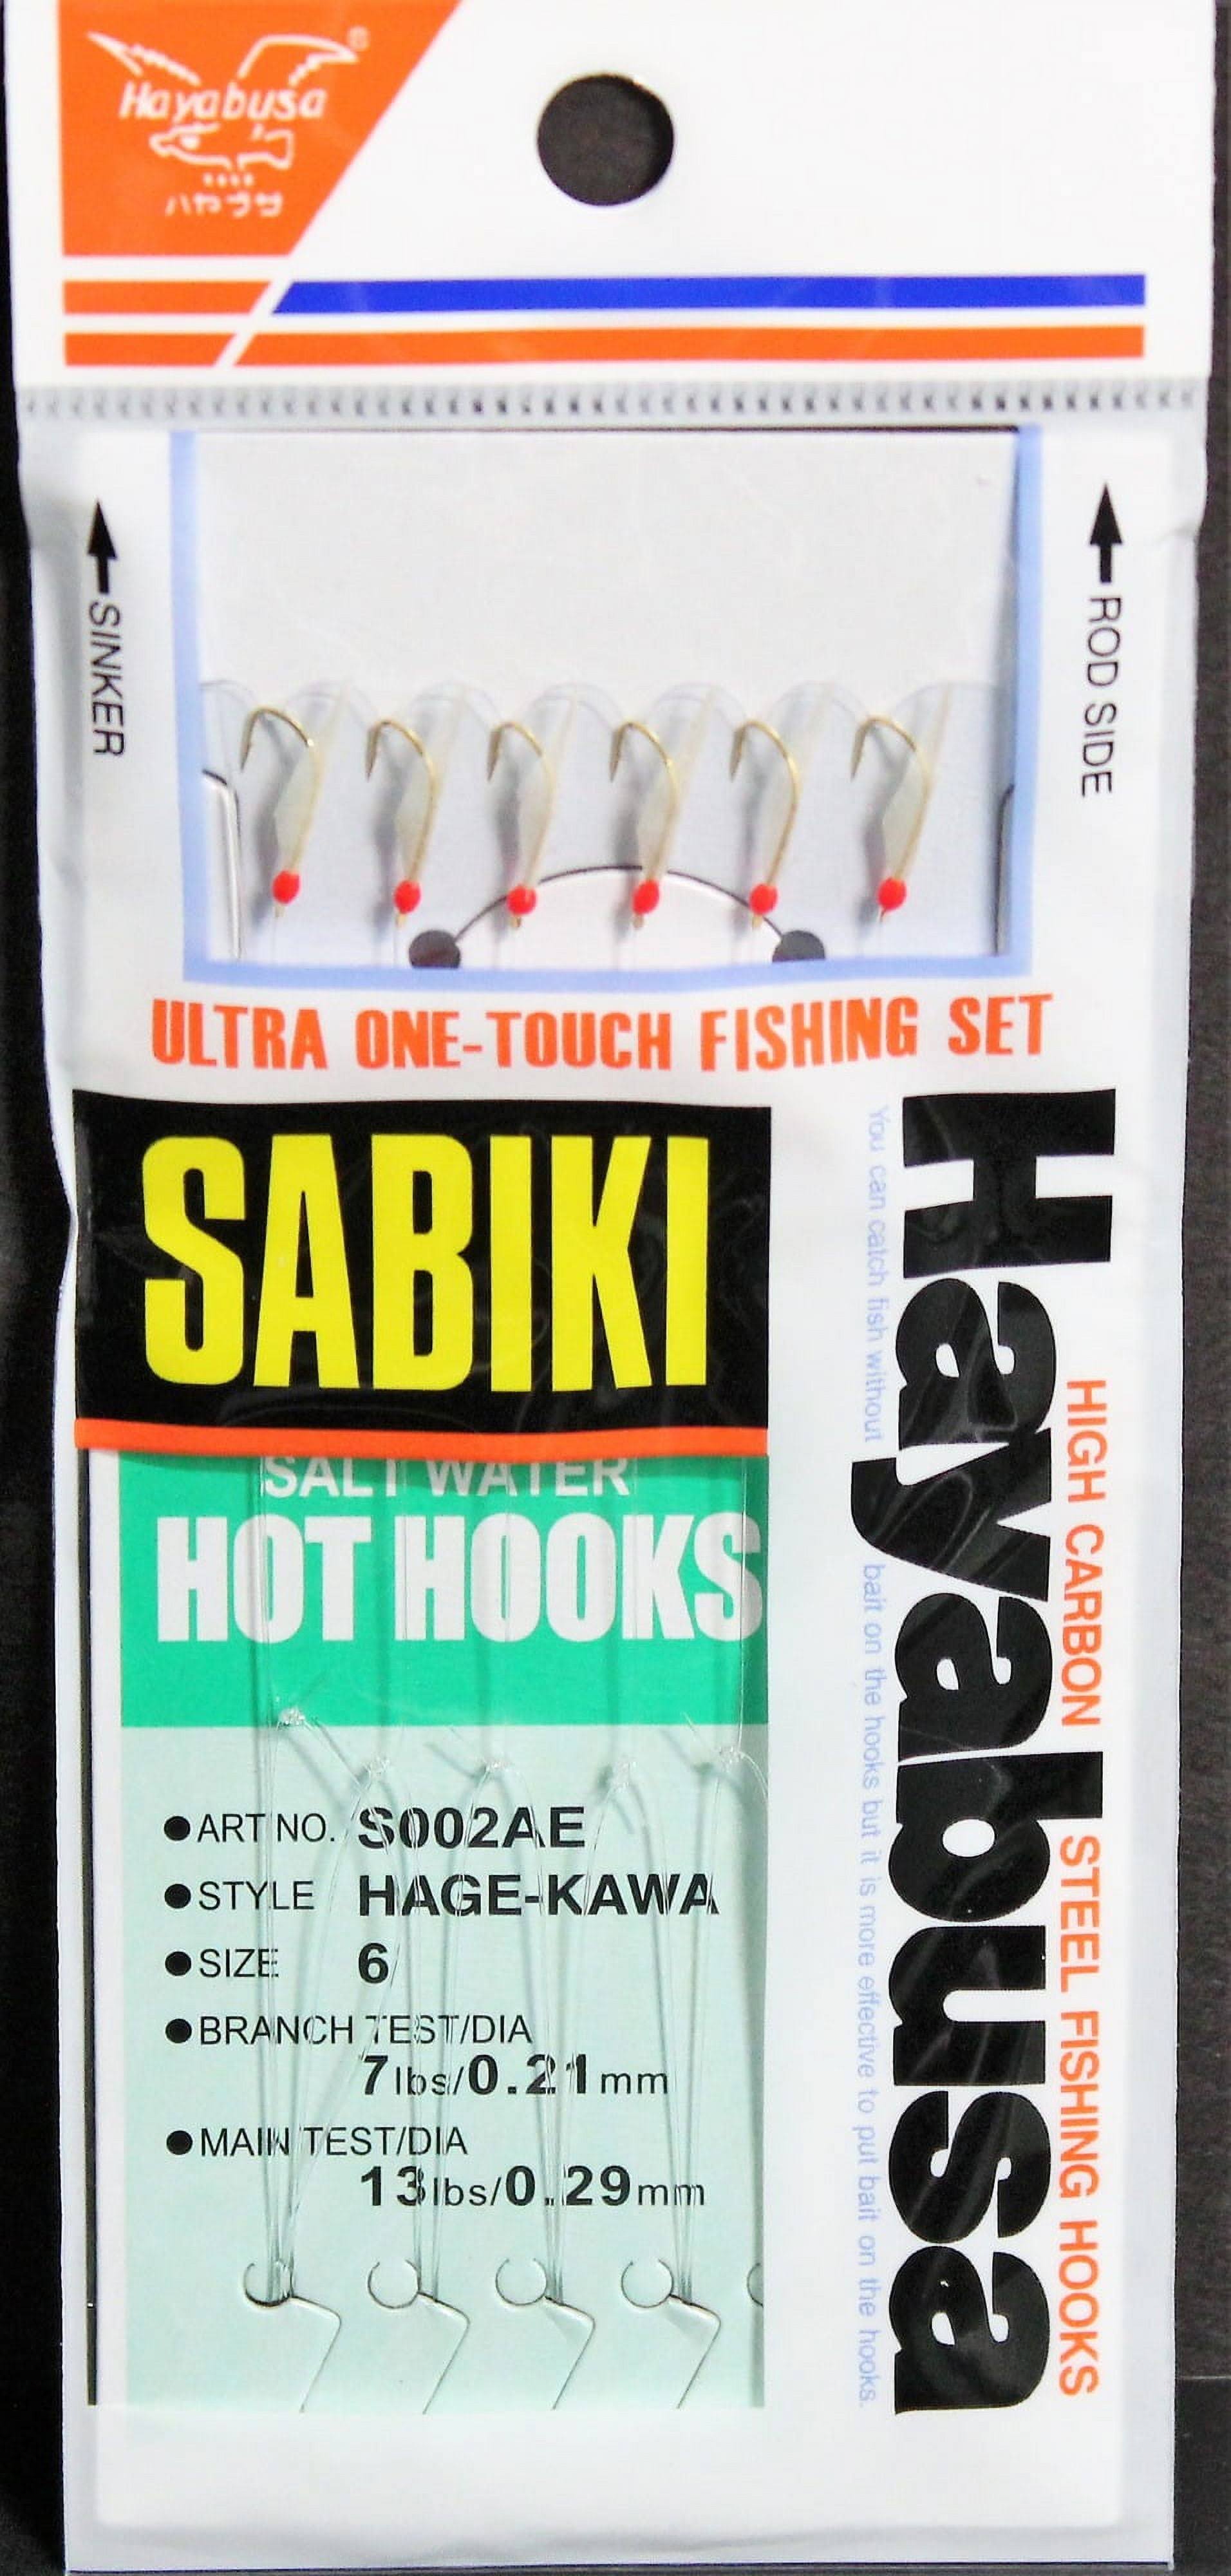 Hayabusa Saltwater Red Hot Hooks Sabiki Rigs Pack - 6pk, size 6